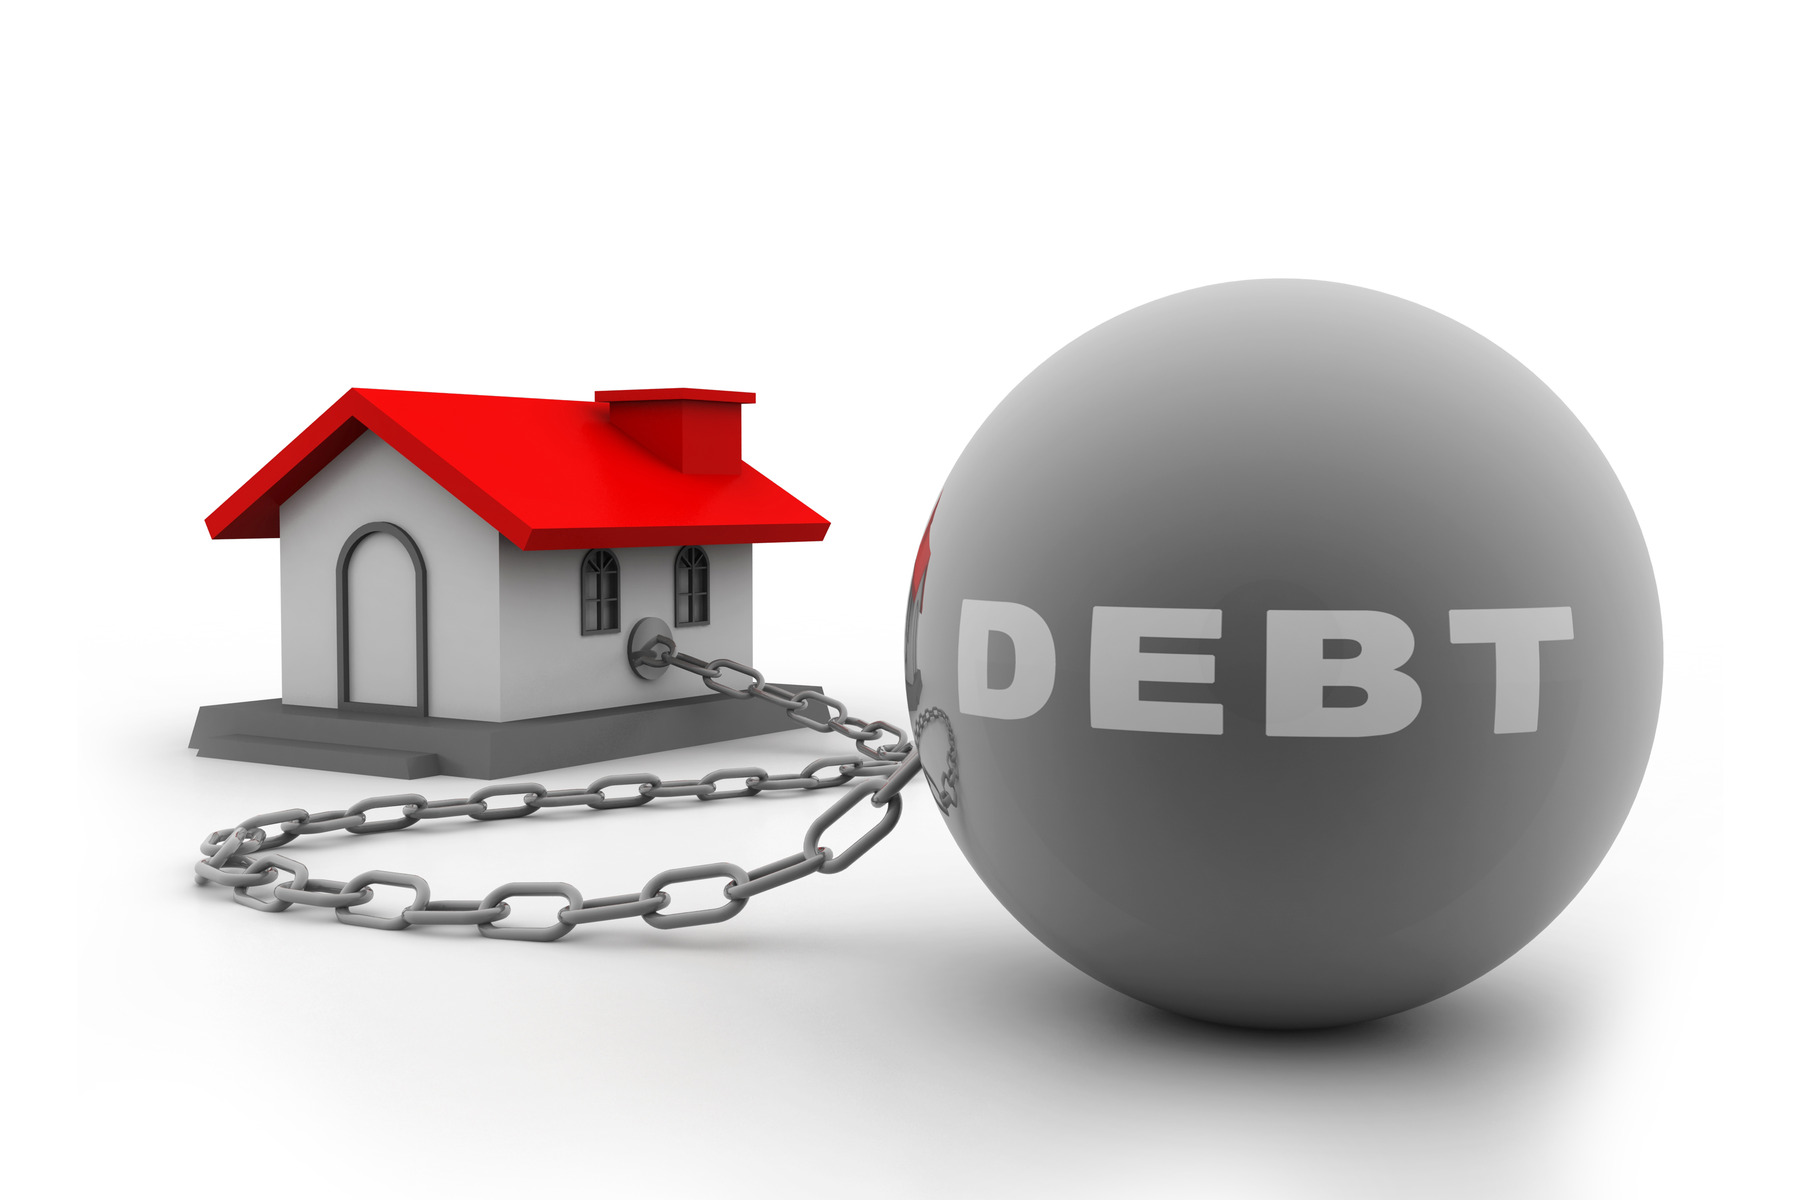 양카이성, “정부 부채율 높지 않아, 기업의 과도한 대출 의존이 문제”